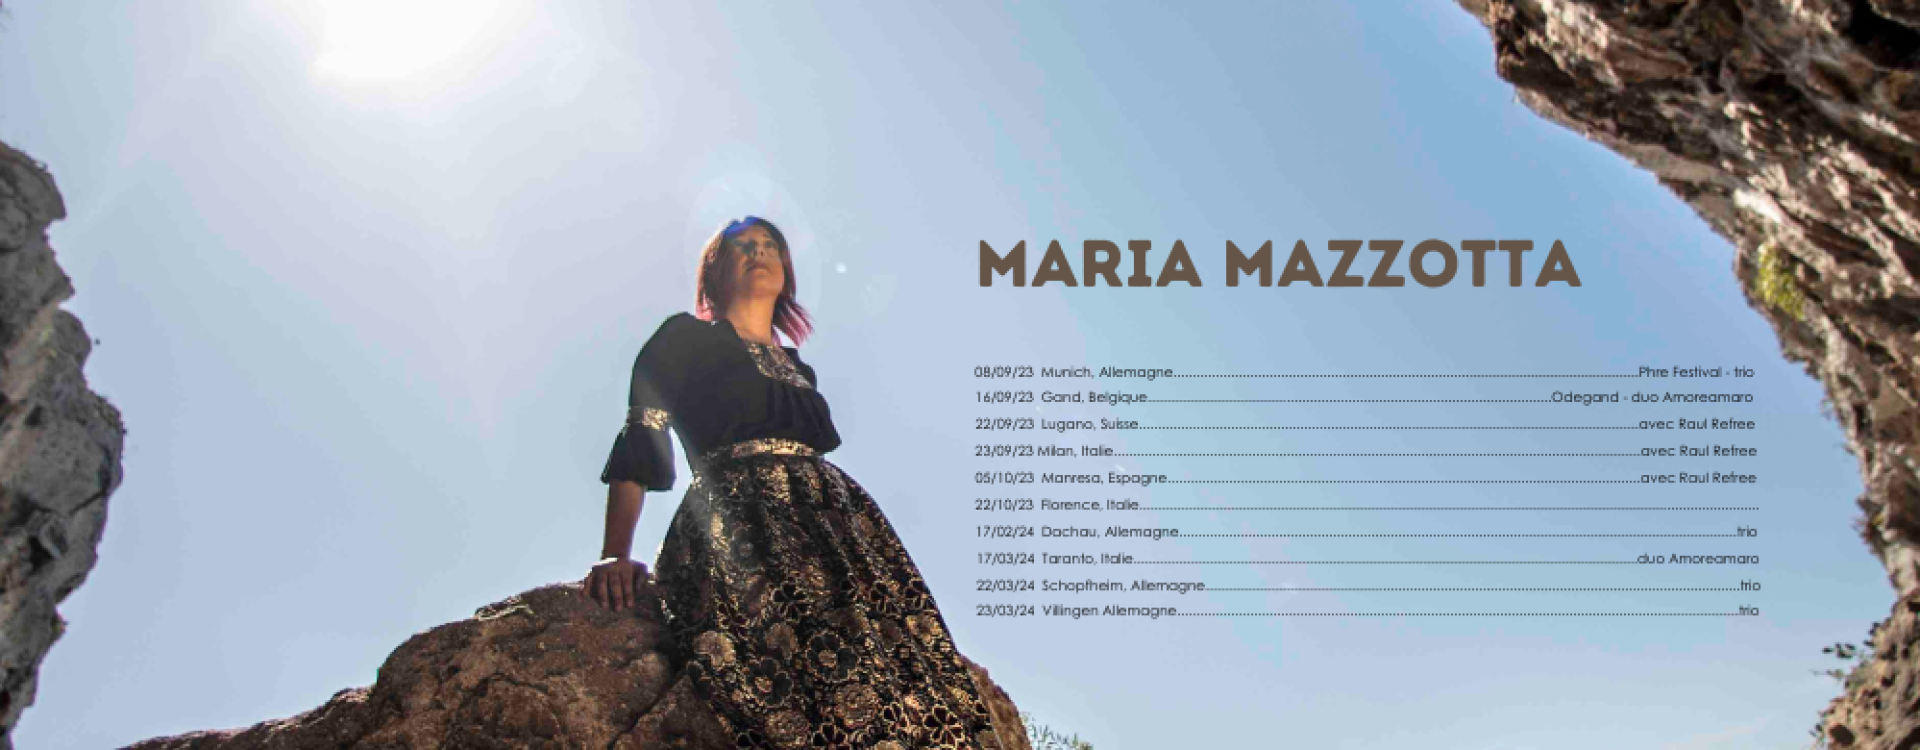 Maria Mazzotta on tour